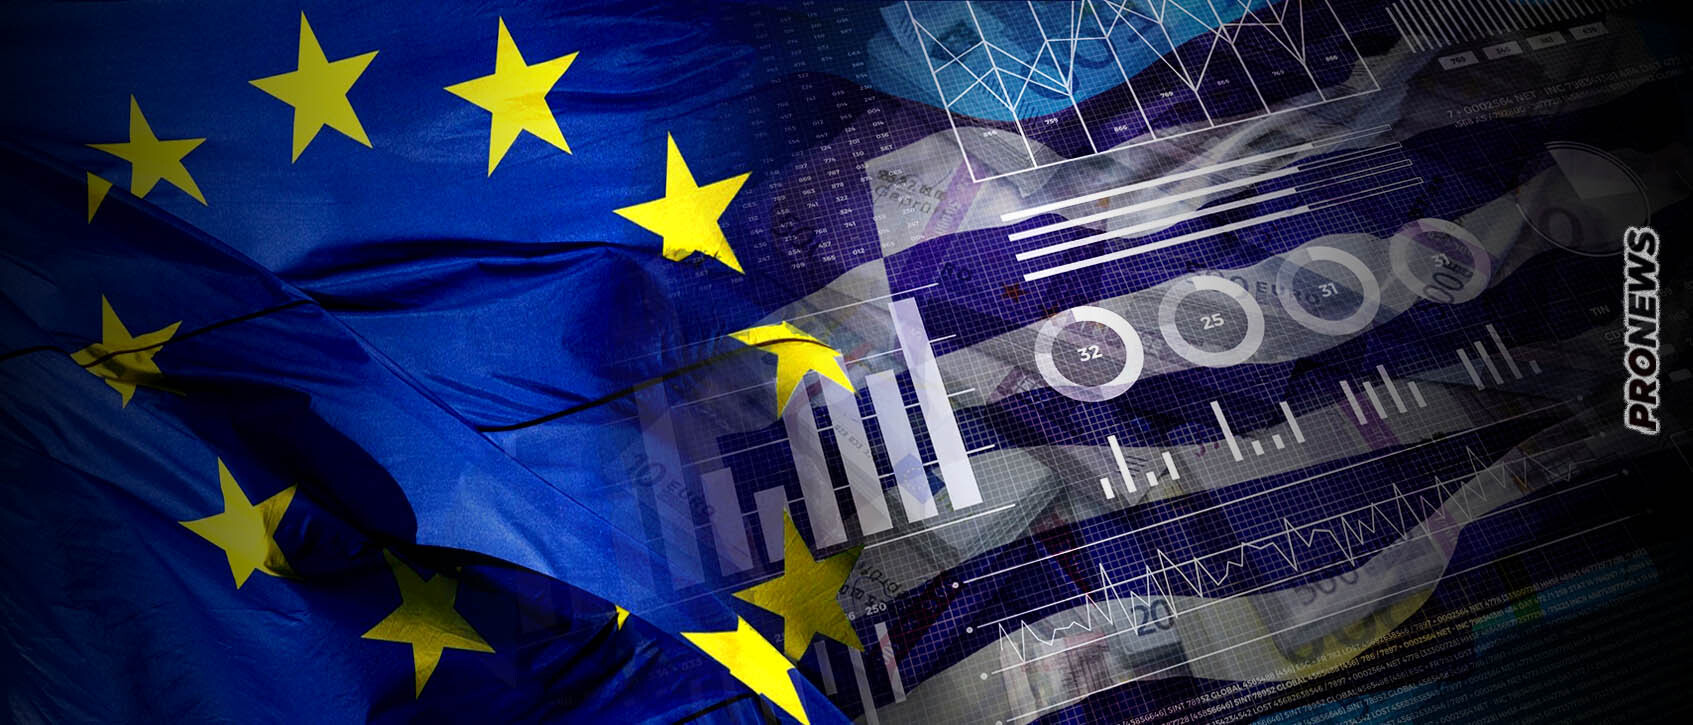 Η ΕΕ διακόπτει τα μέτρα στήριξης με τα οποία η κυβέρνηση Μητσοτάκη έκρυβε την «γύμνια» της ελληνικής οικονομίας